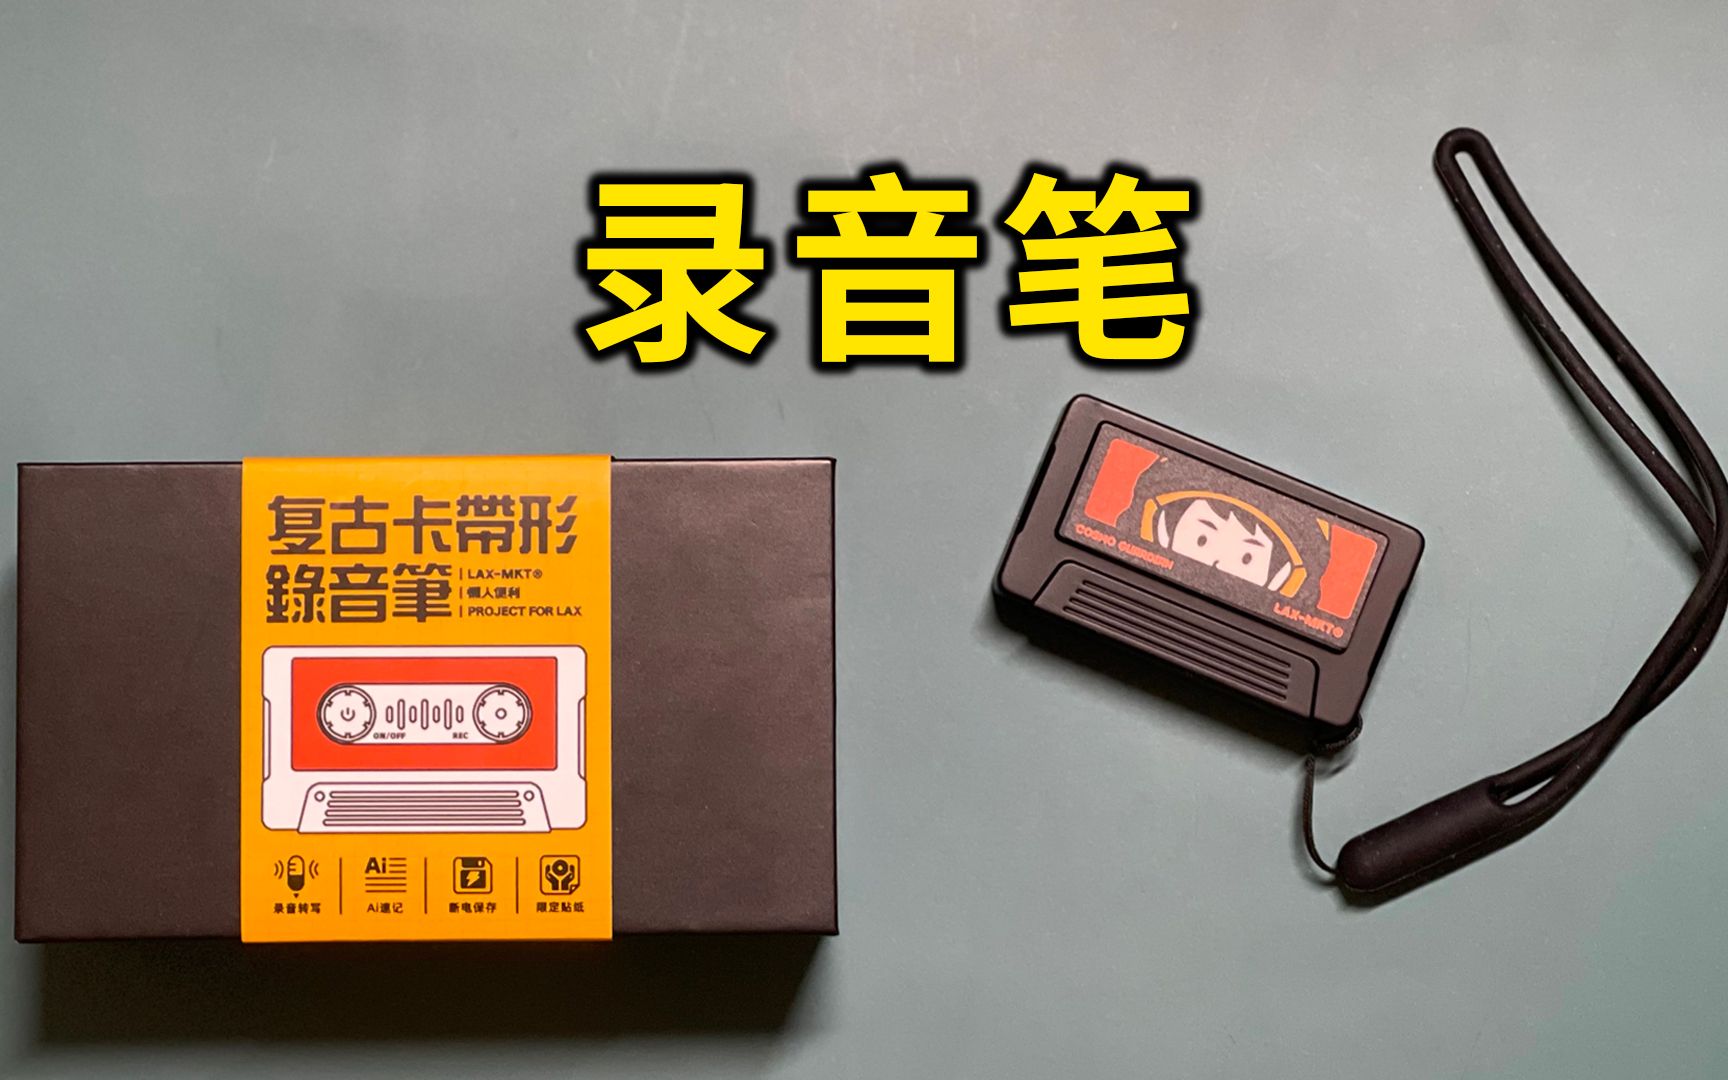 【开箱】懒人便利商店 X 讯飞听见联名限定复古卡带形录音笔